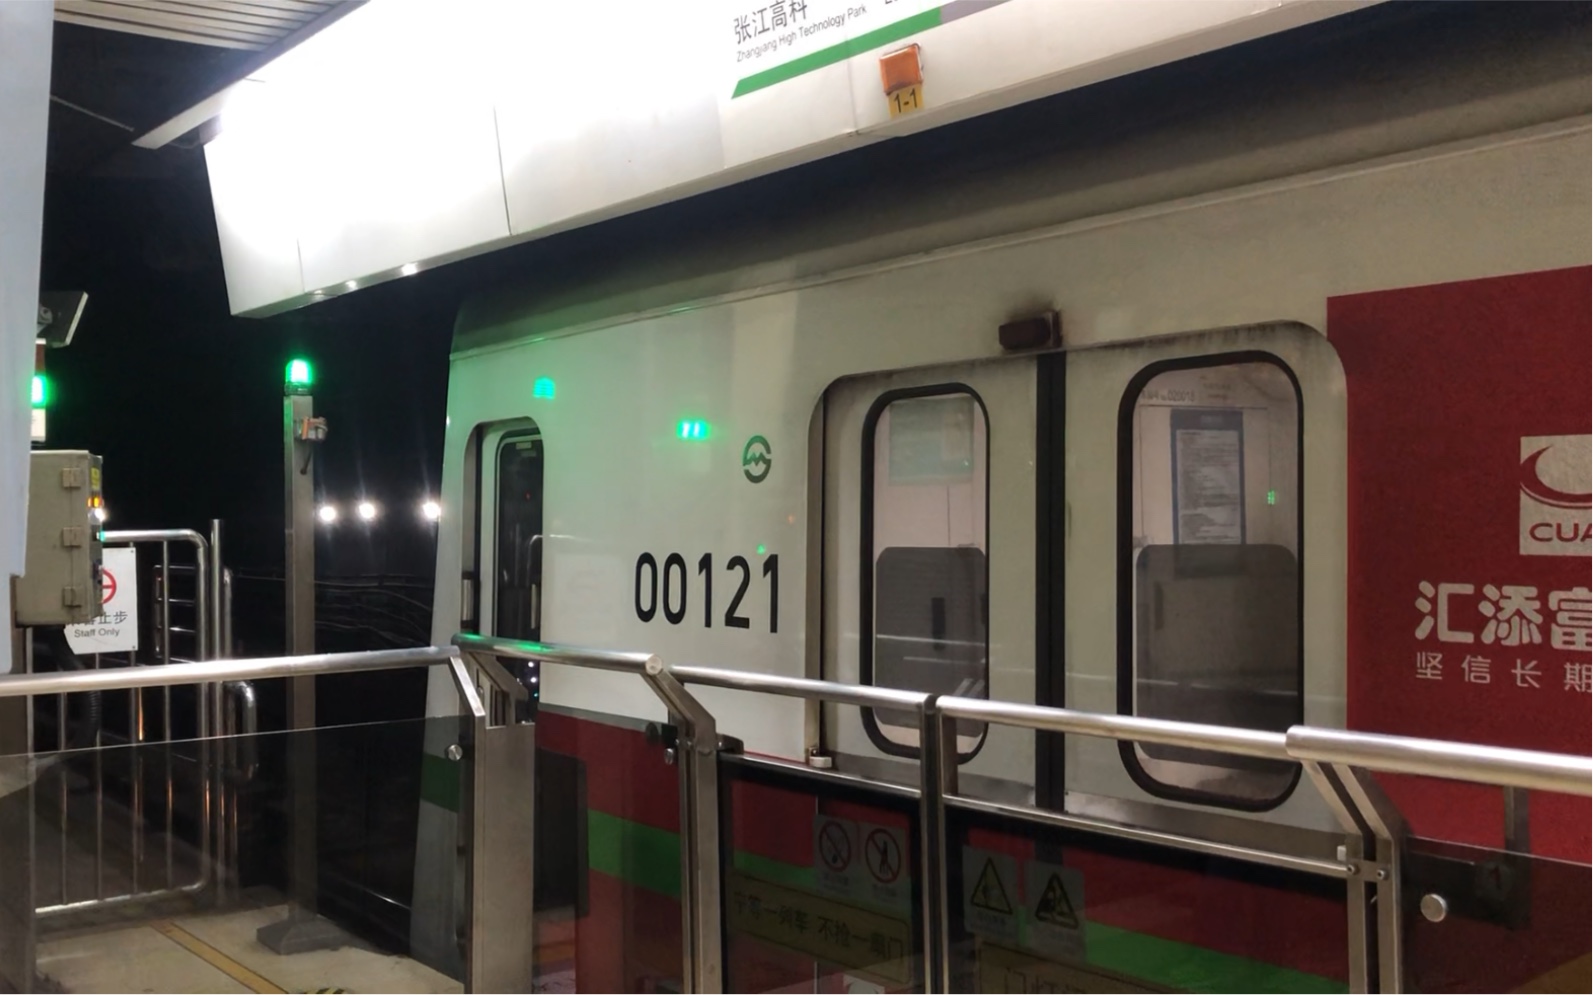 【上海地铁】2号线 201号车 出龙阳路站(徐泾东往广兰路方向)